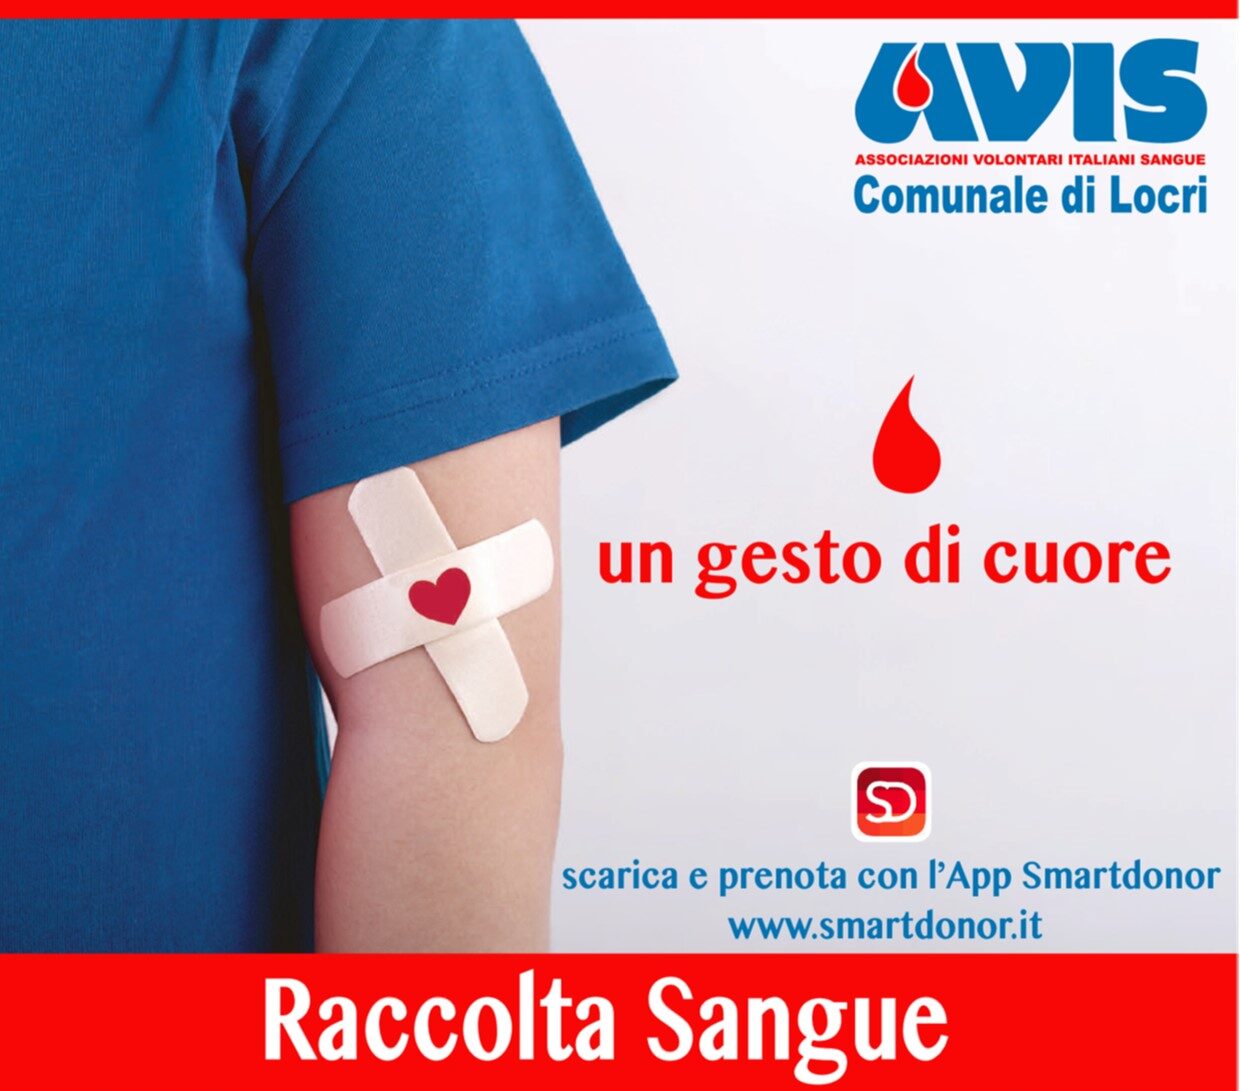 L’AVIS Comunale di Locri comunica le date delle raccolte di sangue per il mese di novembre 2022